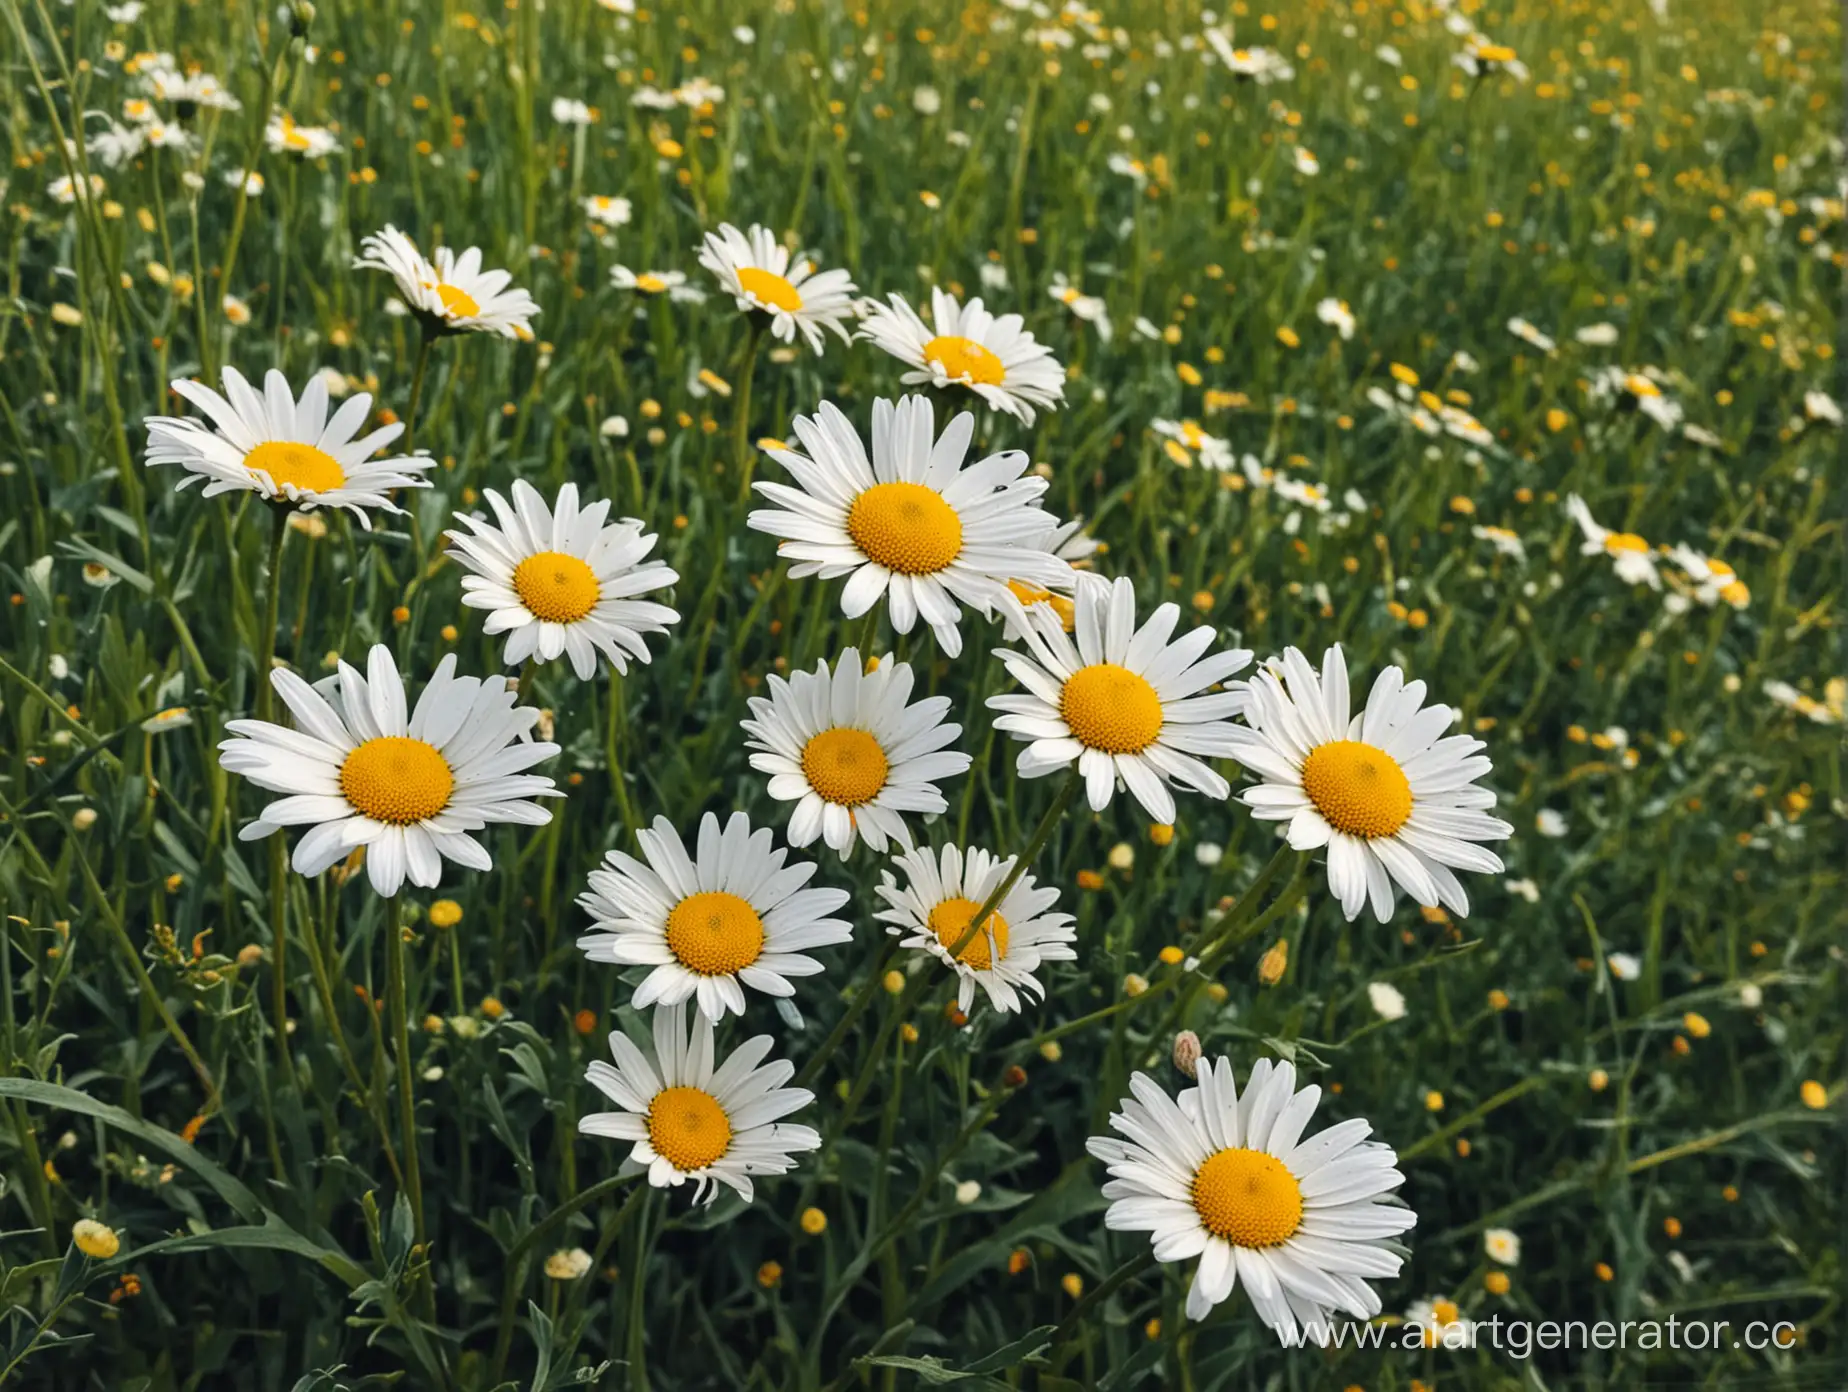 Vibrant-Daisy-Meadow-Blooming-Flowers-in-Sunlit-Field